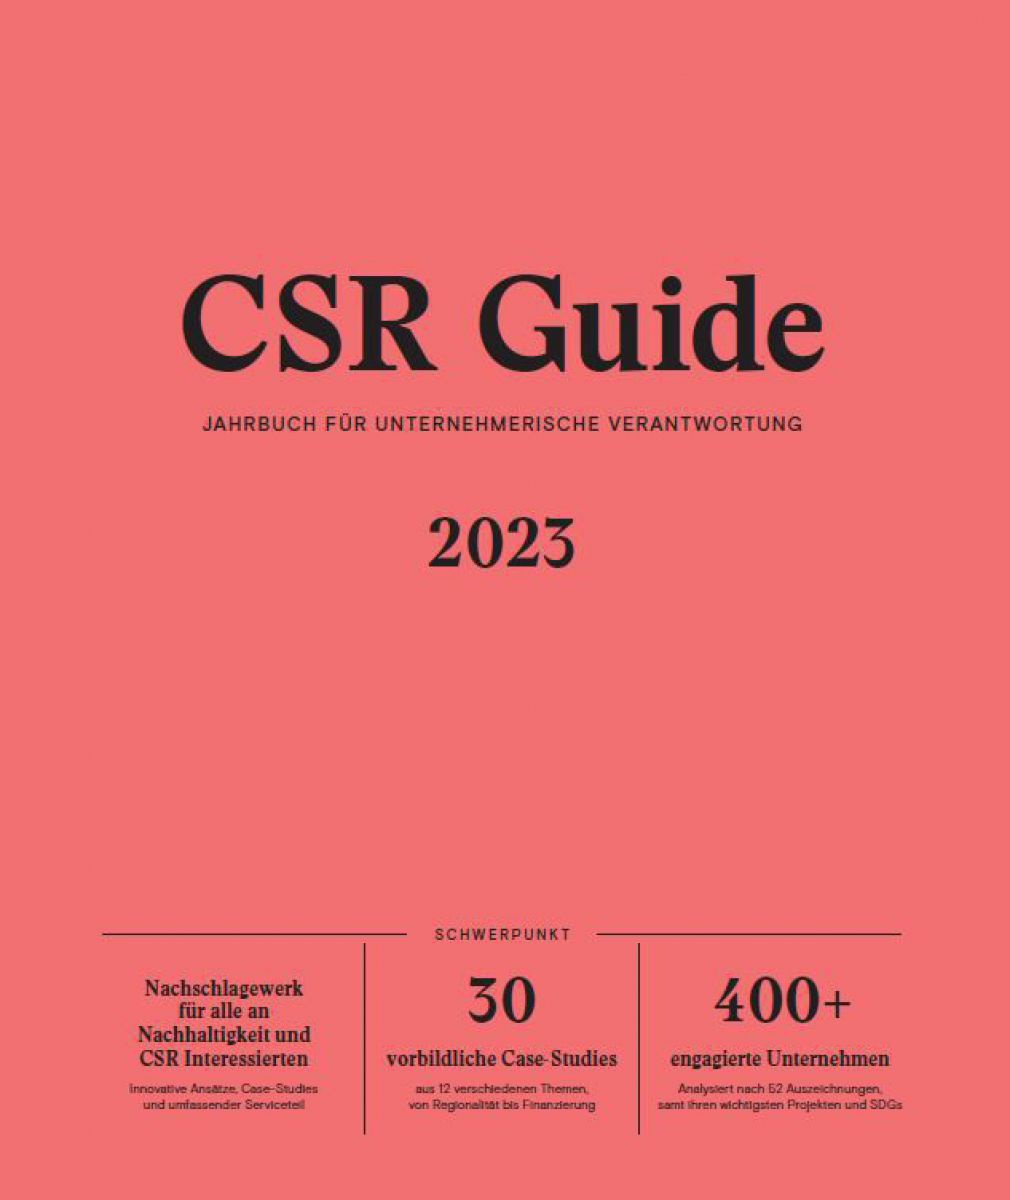 Auf einem orange-roten einfärbigen Hintergrund steht in schwarzen Buchstaben: CSR Guide 2023 , Jahrbuch für unternehmerische Verantwortung. 